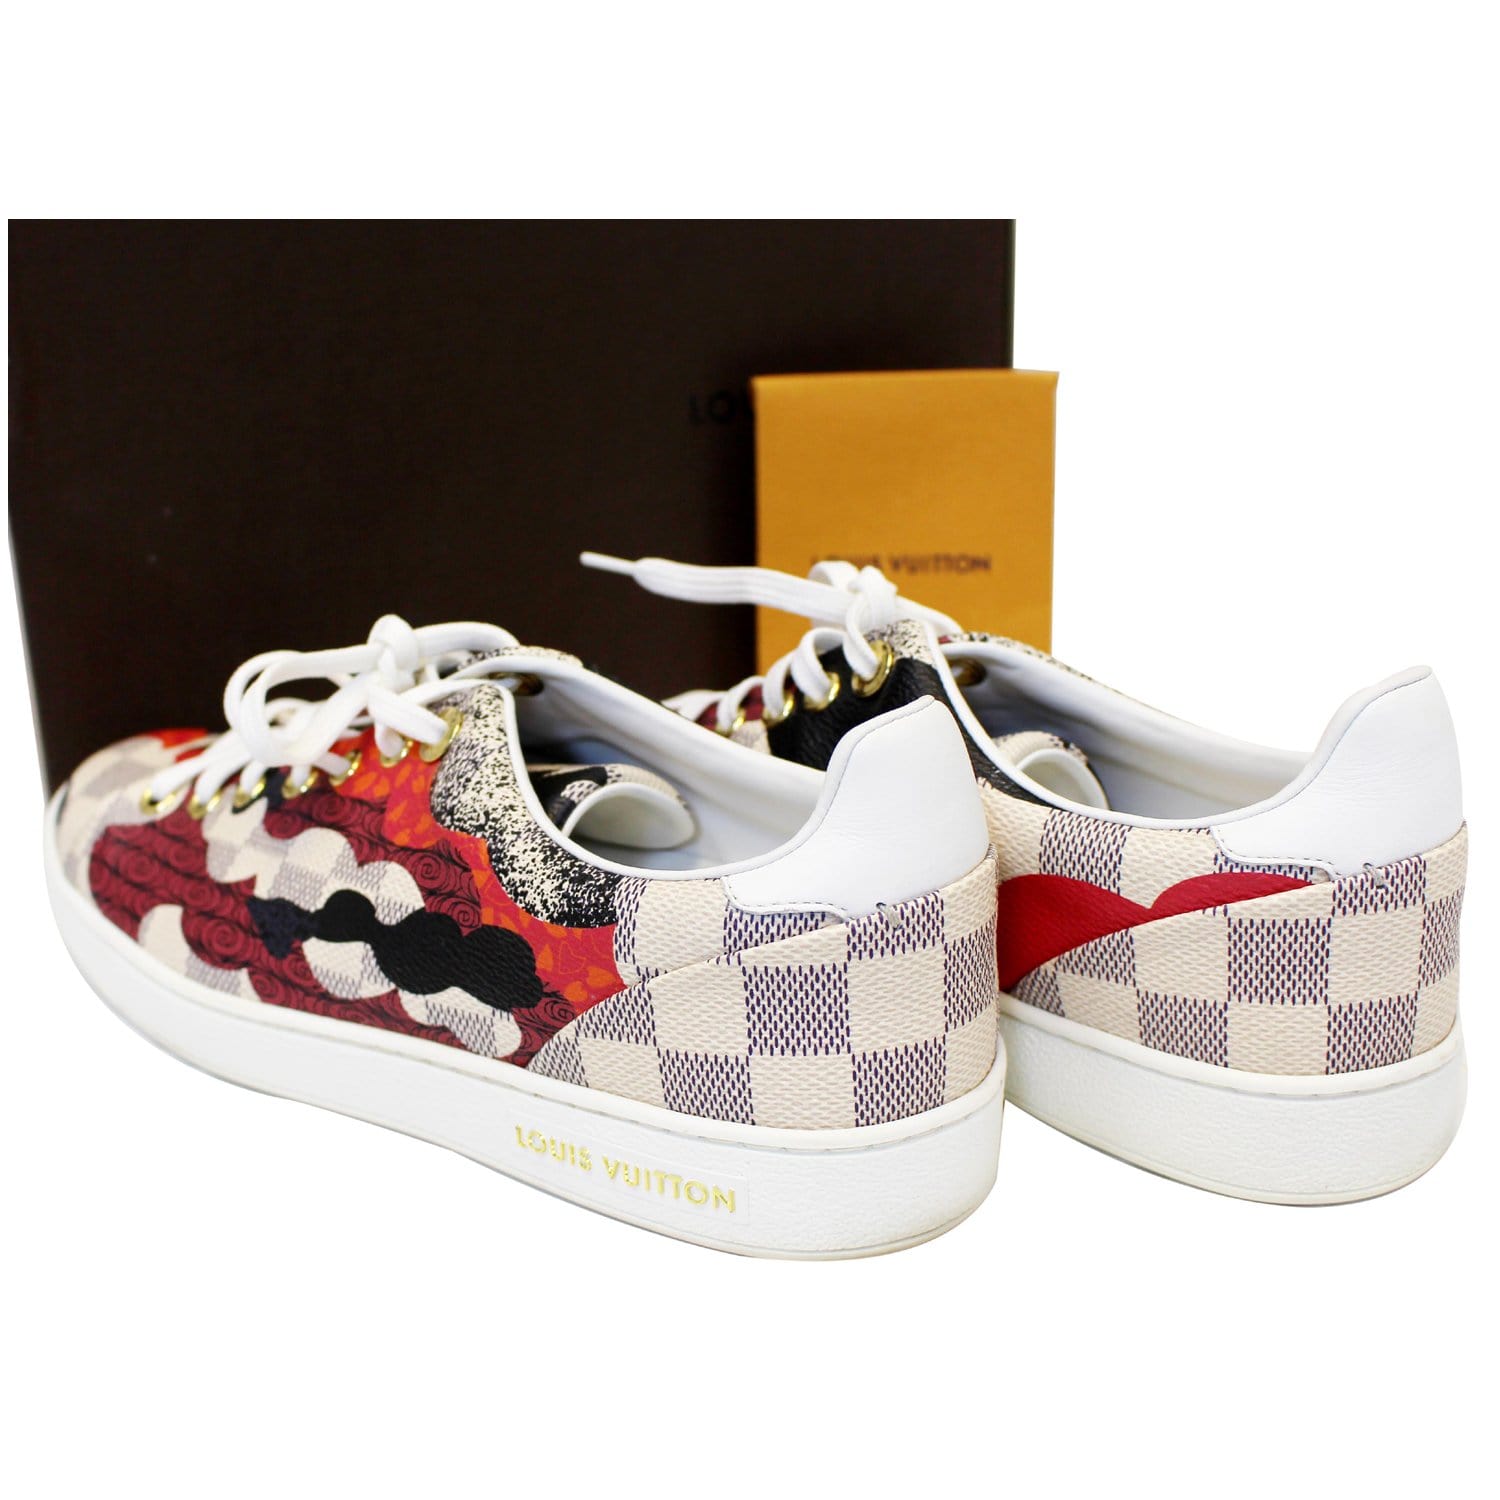 Louis Vuitton Damier Azur Lace Up Sneakers Eu 37.5 MPN GO0047